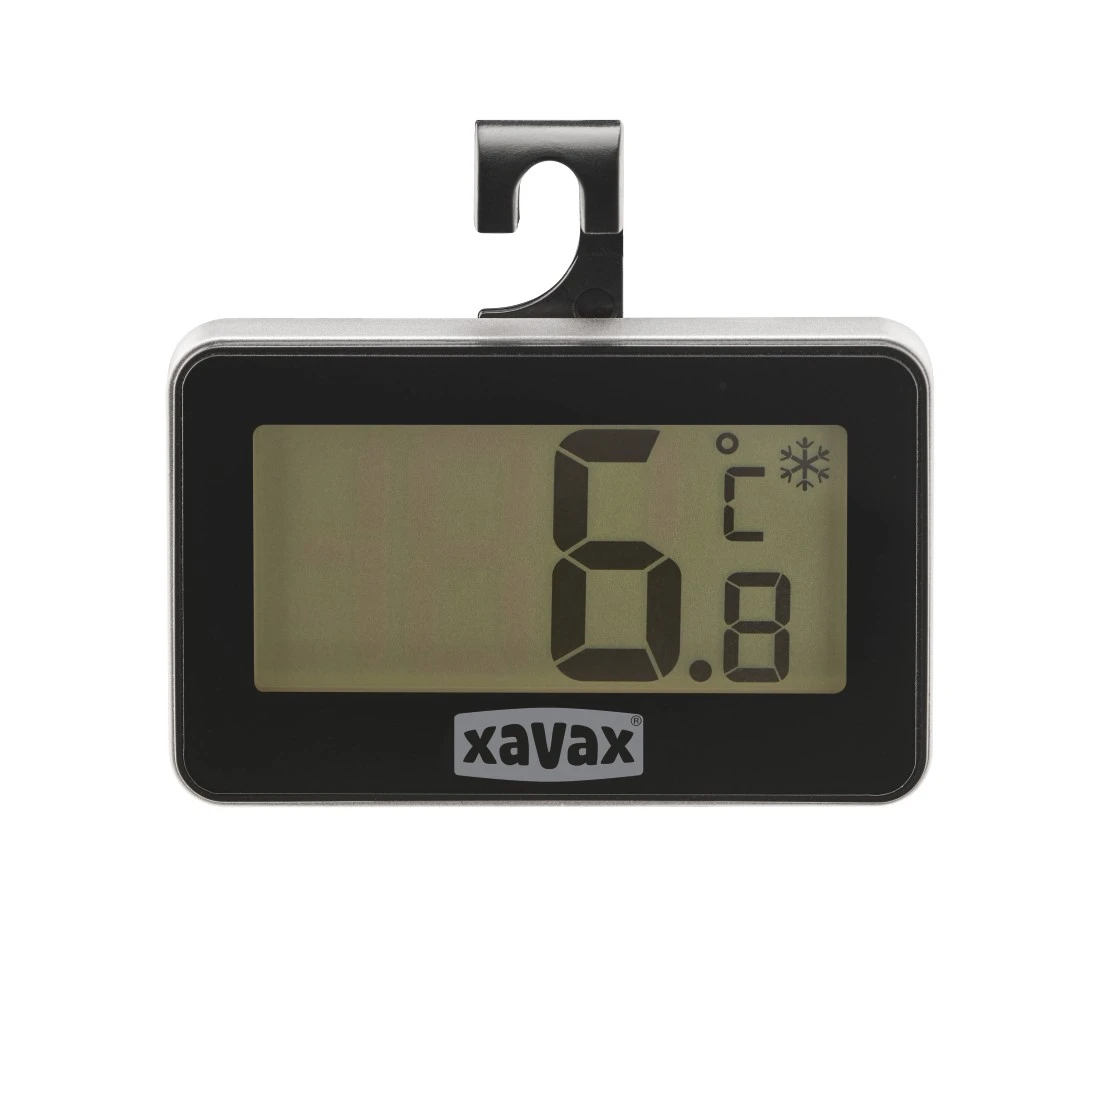 abx2 Druckfähige Abbildung 2 - Xavax, Digitales Thermometer für Kühlschrank, Gefrierschrank u. Kühltruhe, Schwarz